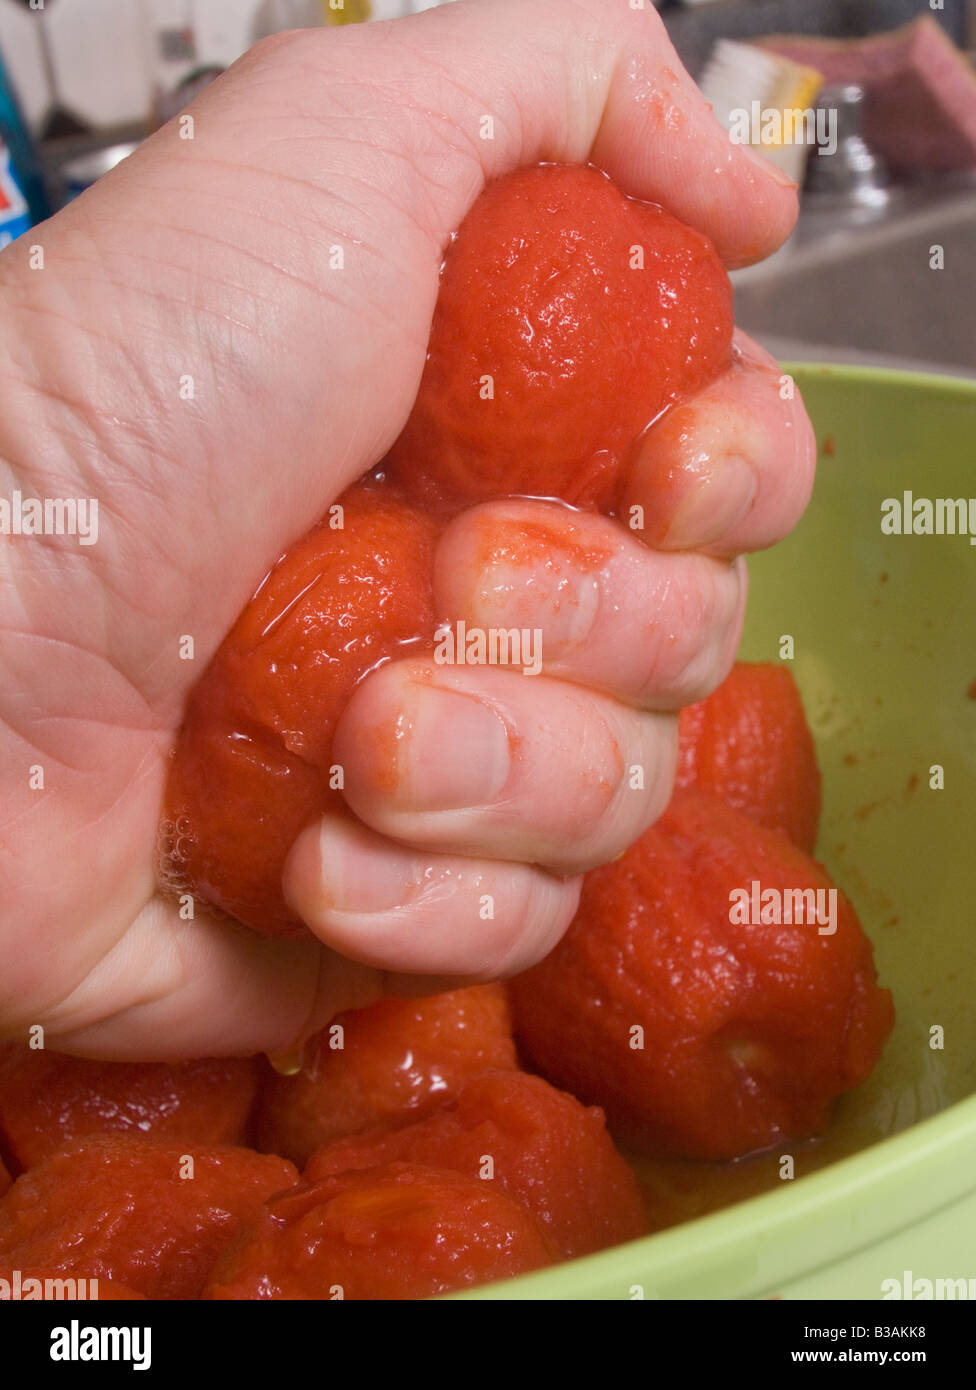 Un cuisinier serrant dans son poing les tomates pelées Banque D'Images